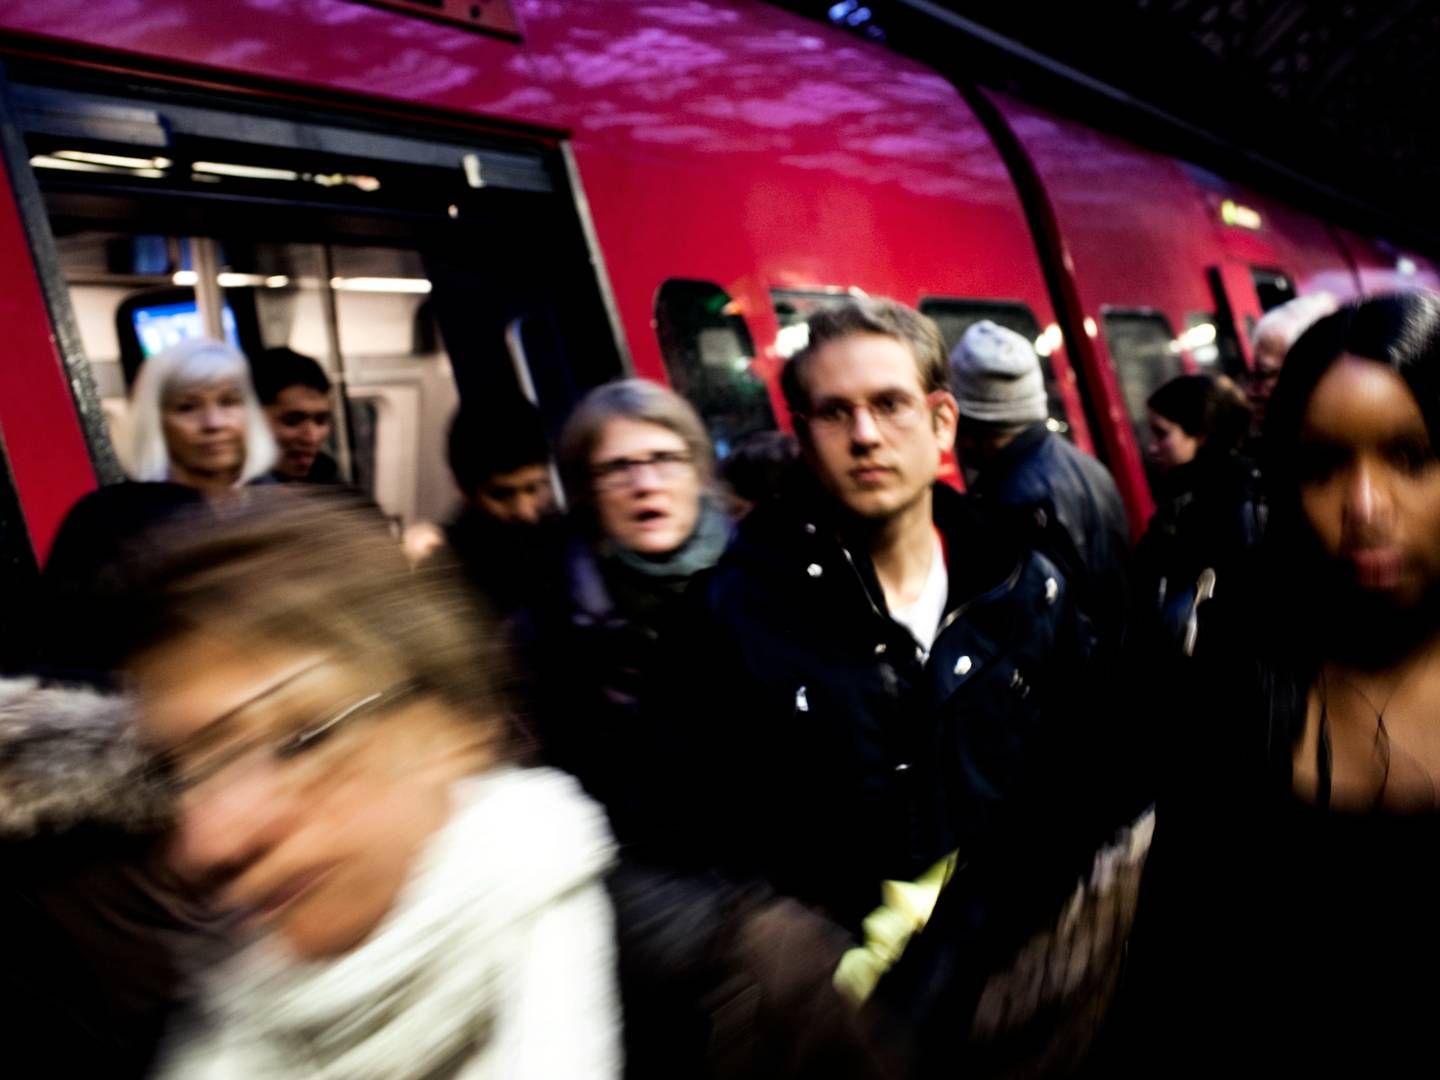 Arbejdsnedlæggelserne har påvirket togtrafikken, der kører med mange forsinkelser og aflysninger. DSB forventer, at togdriften også vil være påvirket de kommende dage. | Foto: Mathias Christensen/Politiken/Ritzau Scanpix